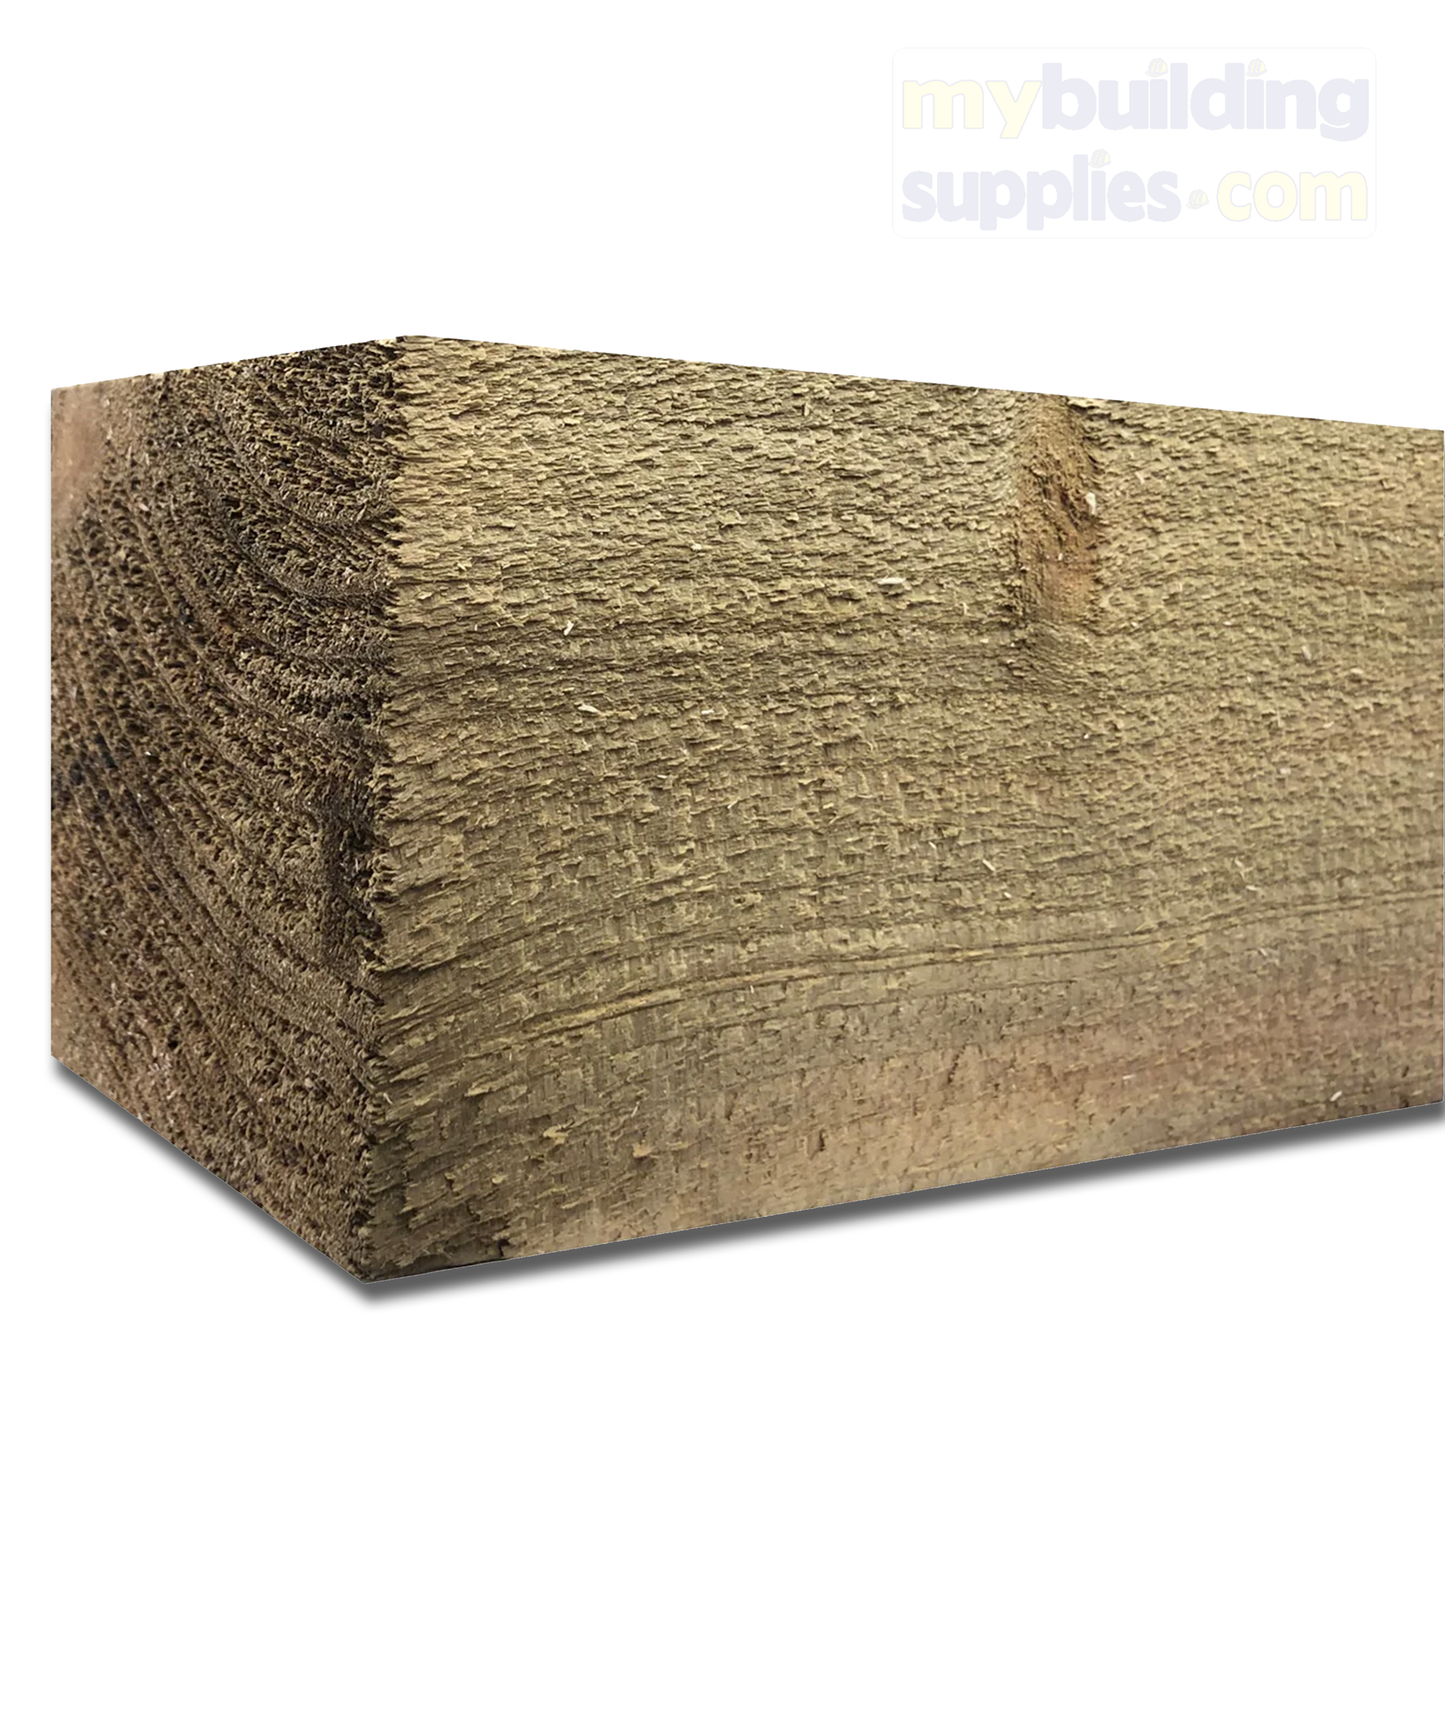 Treated Timber Posts - (4" X 4") - 100mm (H) x 100mm (W) -  8ft x 10ft x 12ft x 16ft (L)